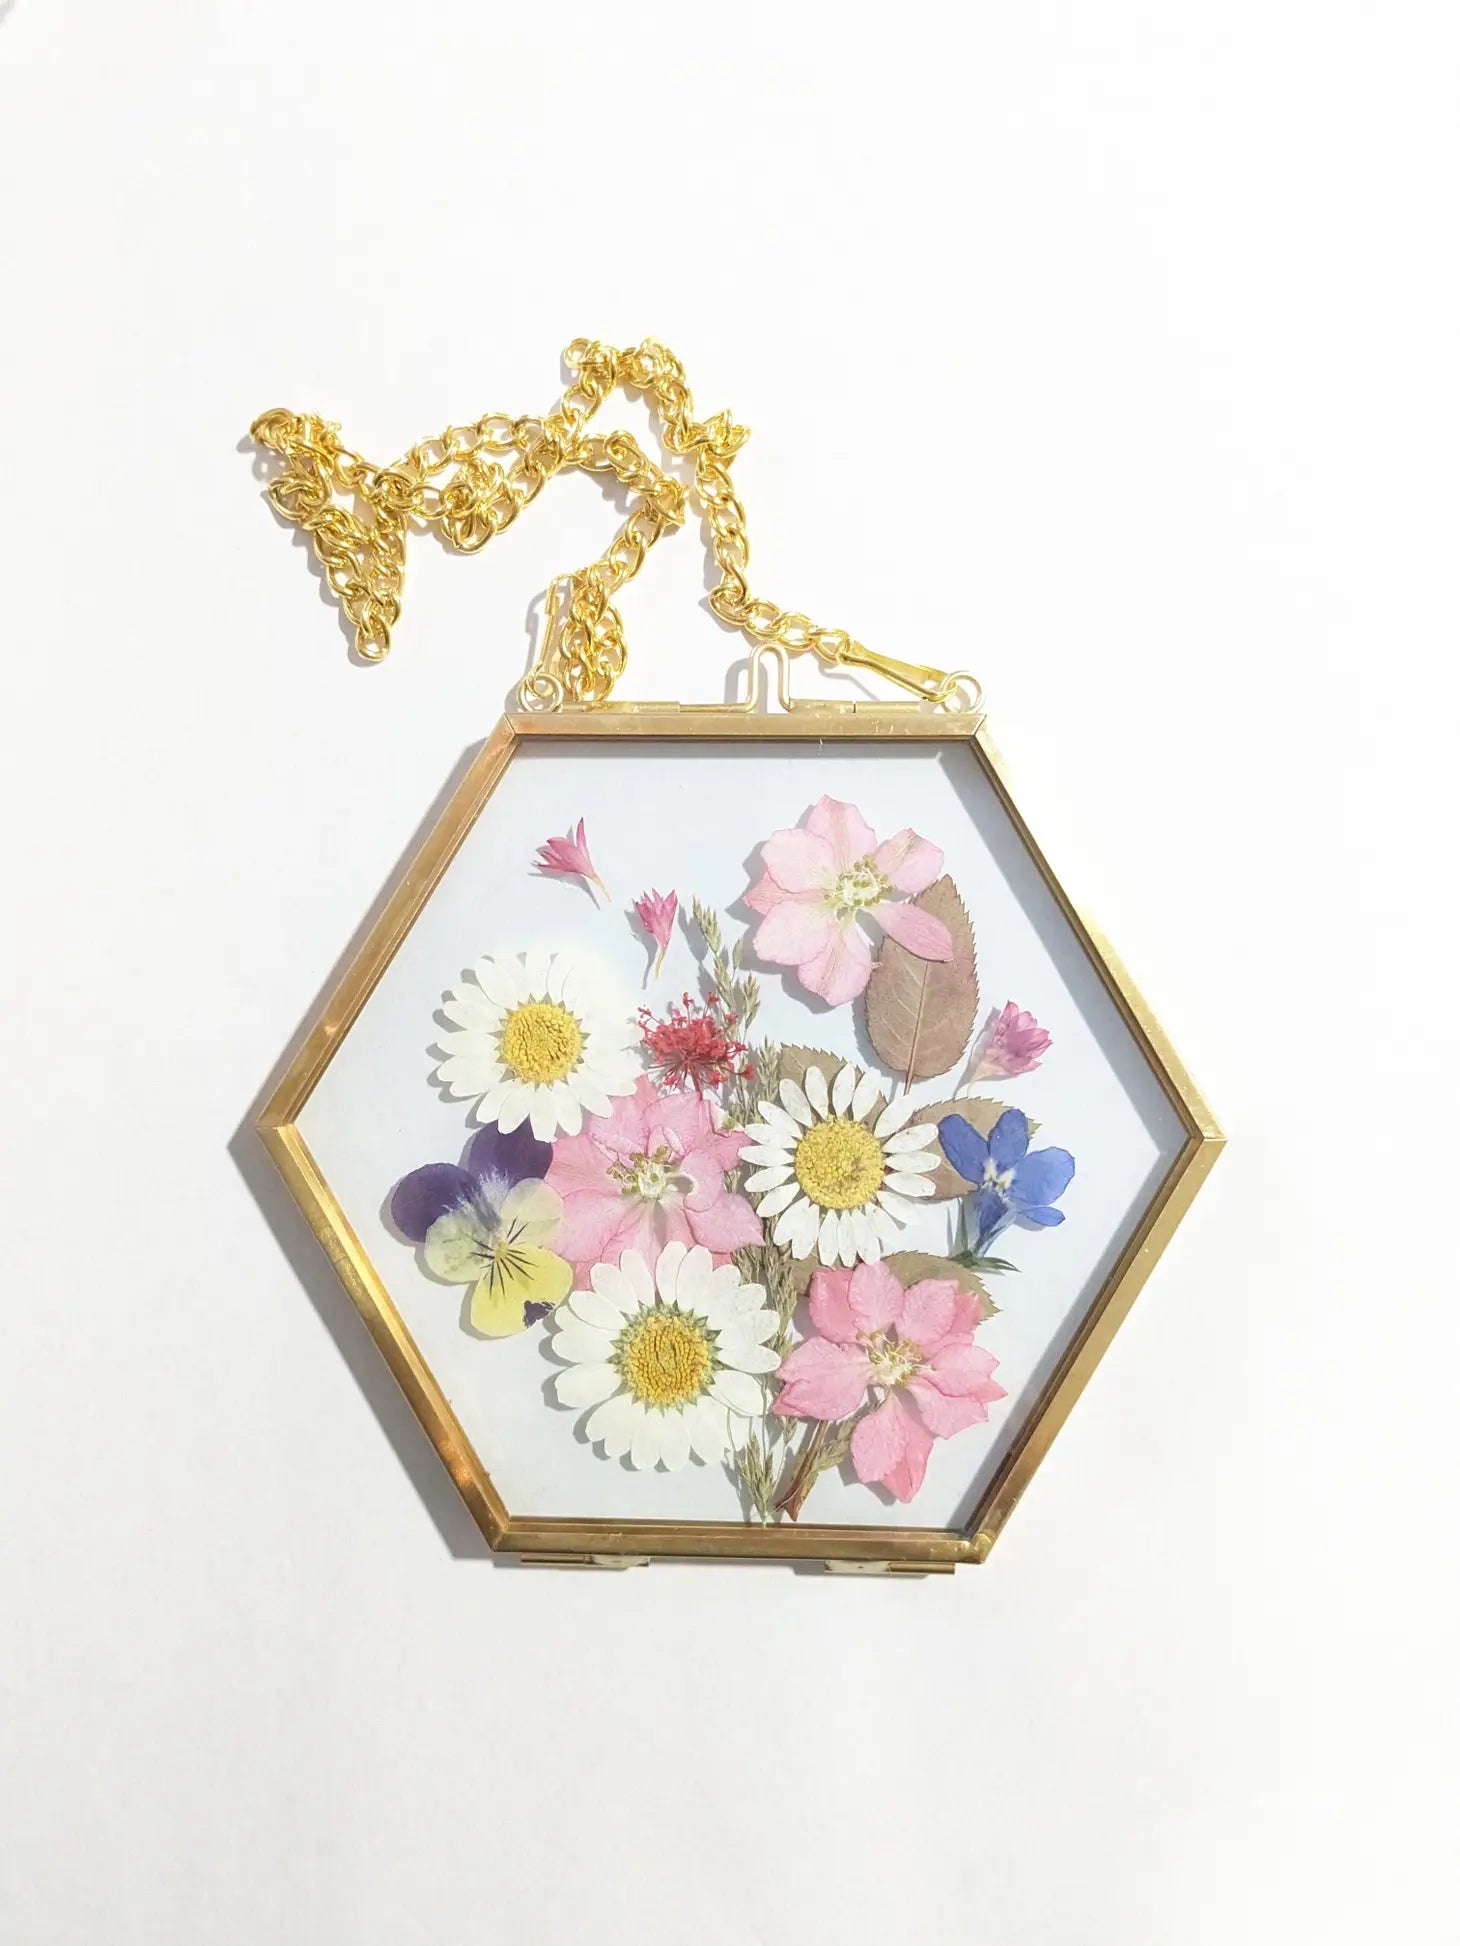 DIY Pressed Flower Frame Kit – Storm King Art Center